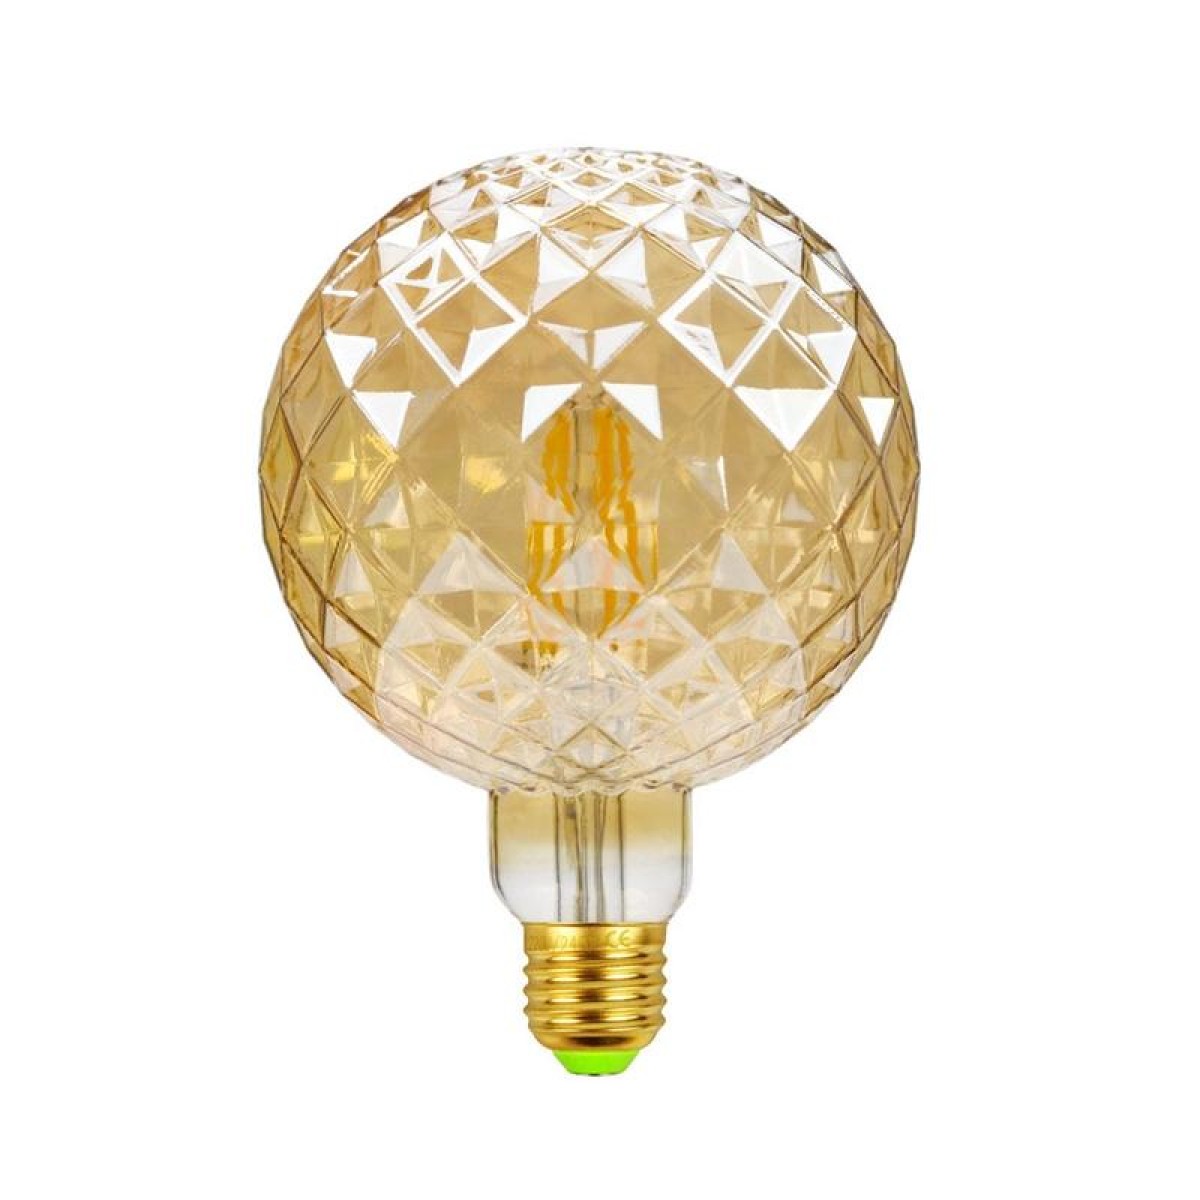 E27 Screw Port LED Vintage Light Shaped Decorative Illumination Bulb, Style: G125 Inner Pineapple Gold(220V 4W 2700K)